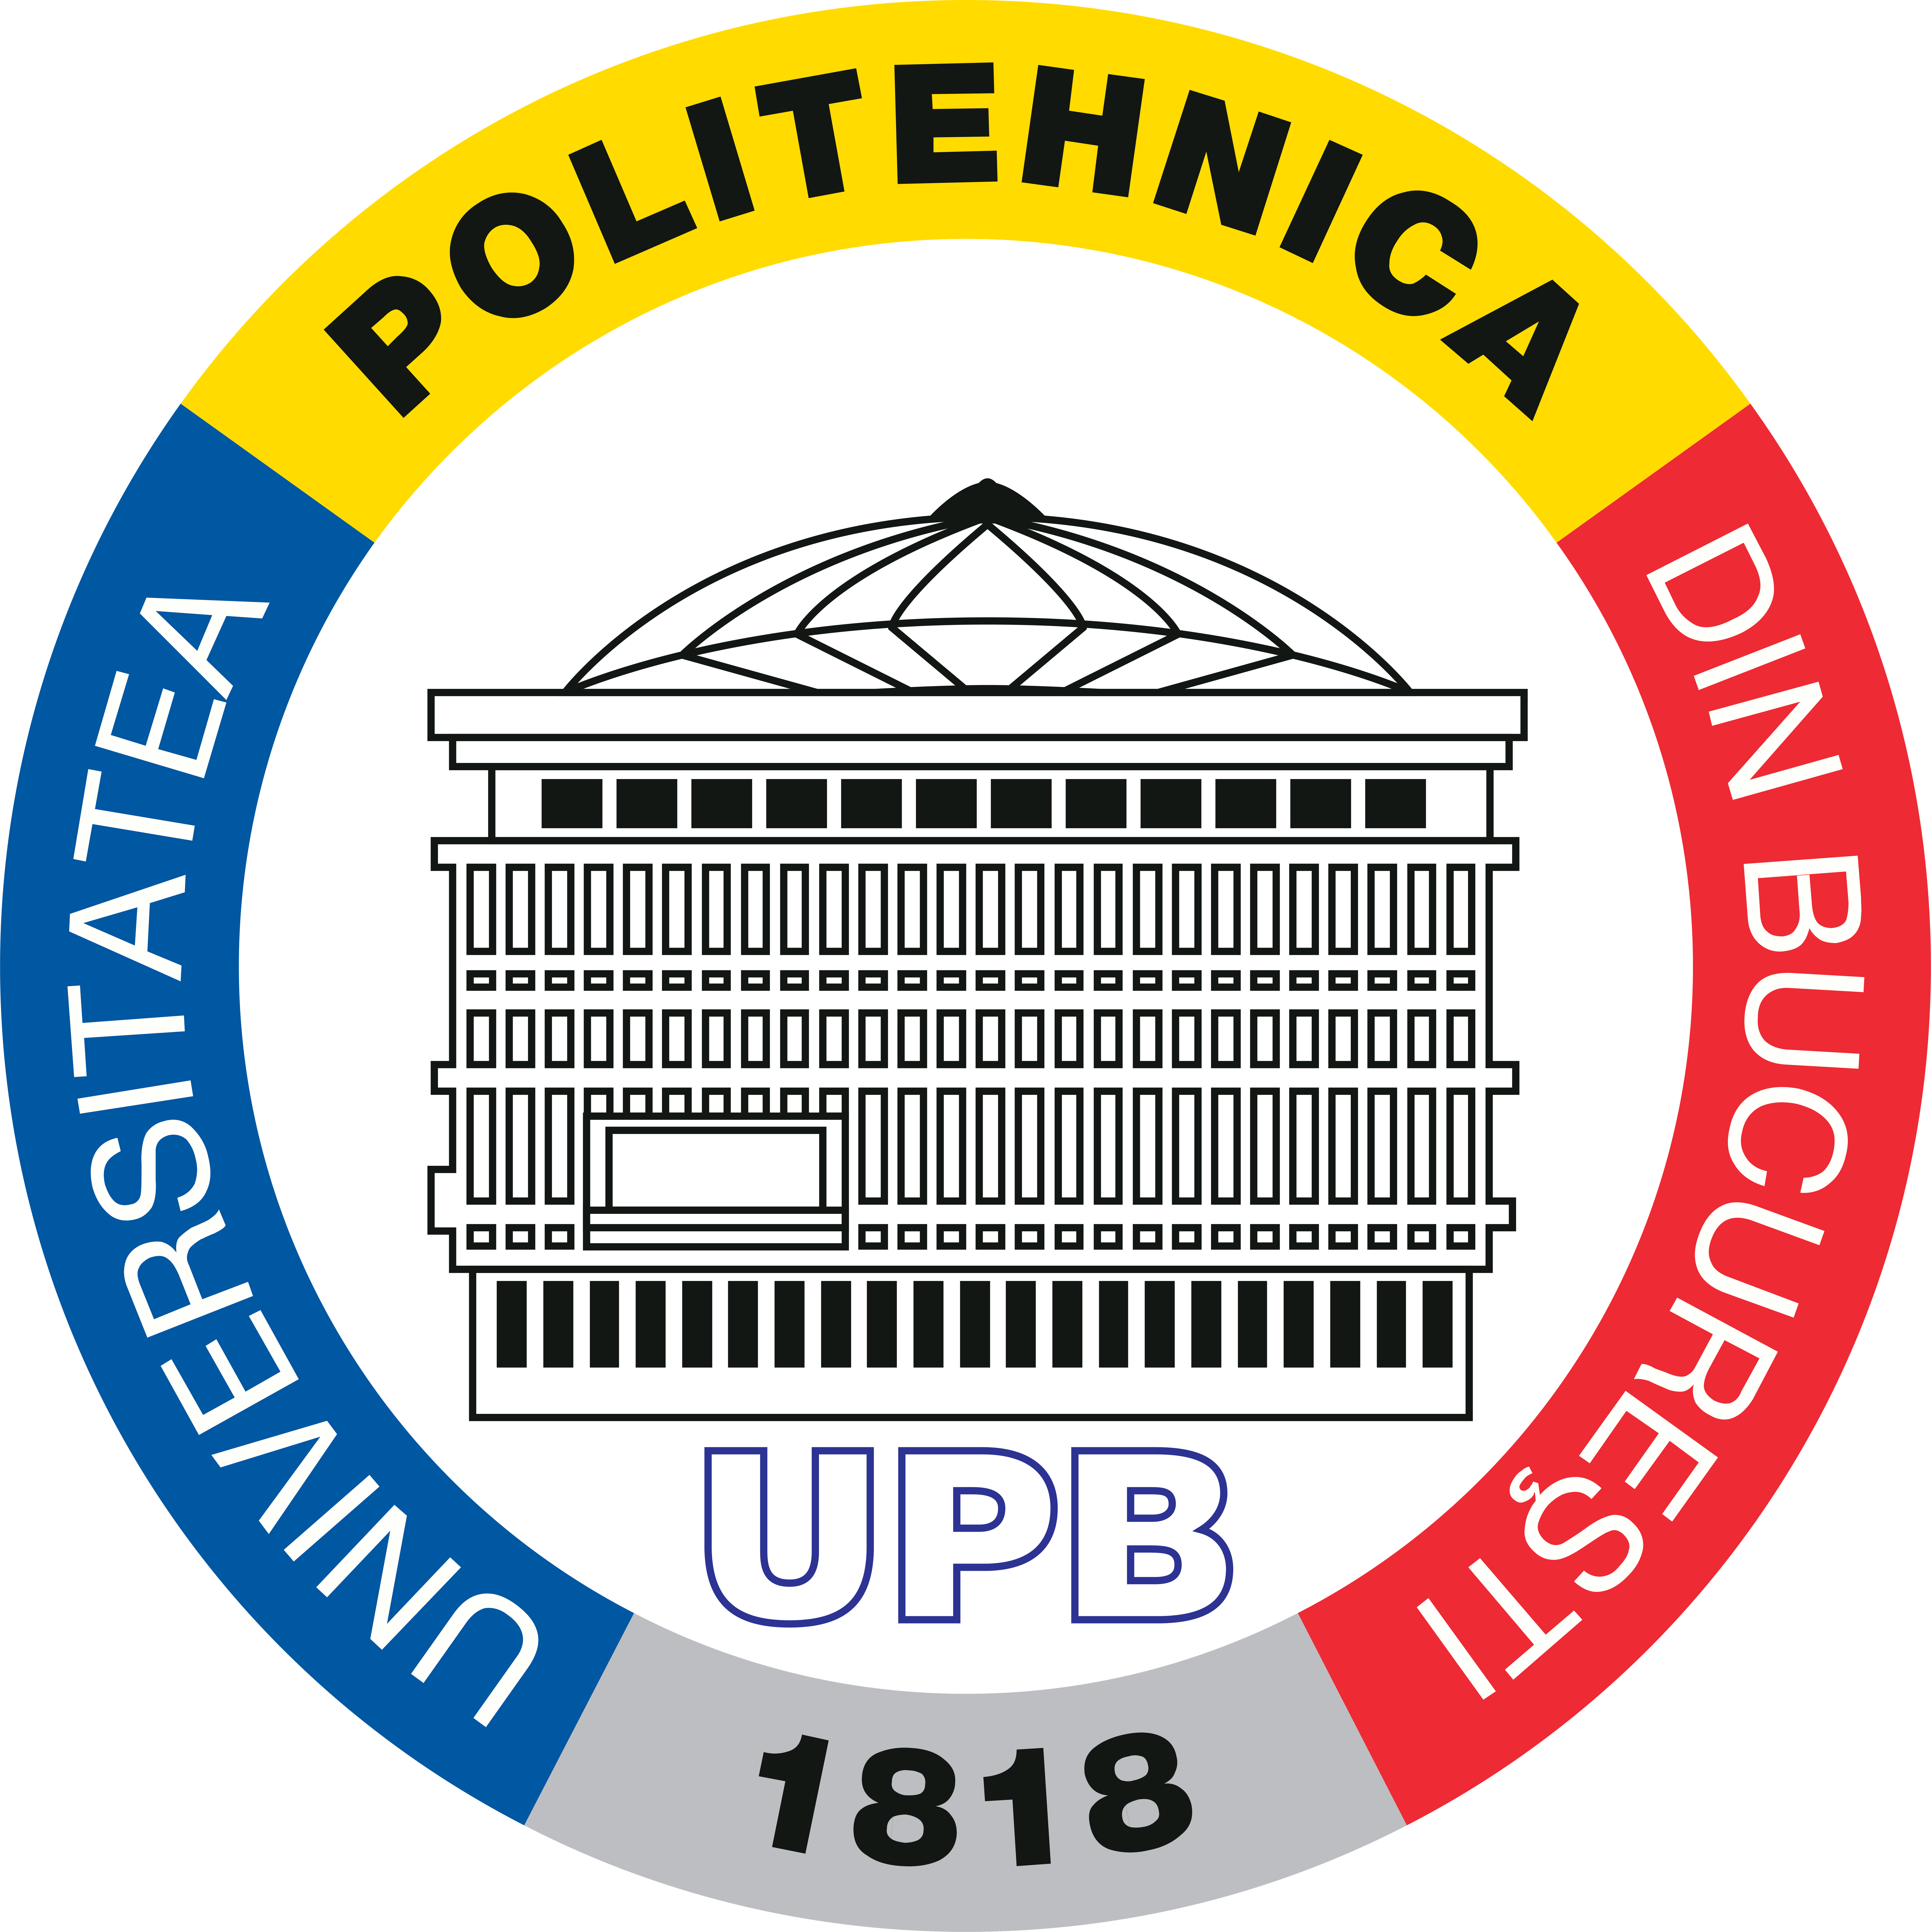 Universitatea POLITEHNICA din București